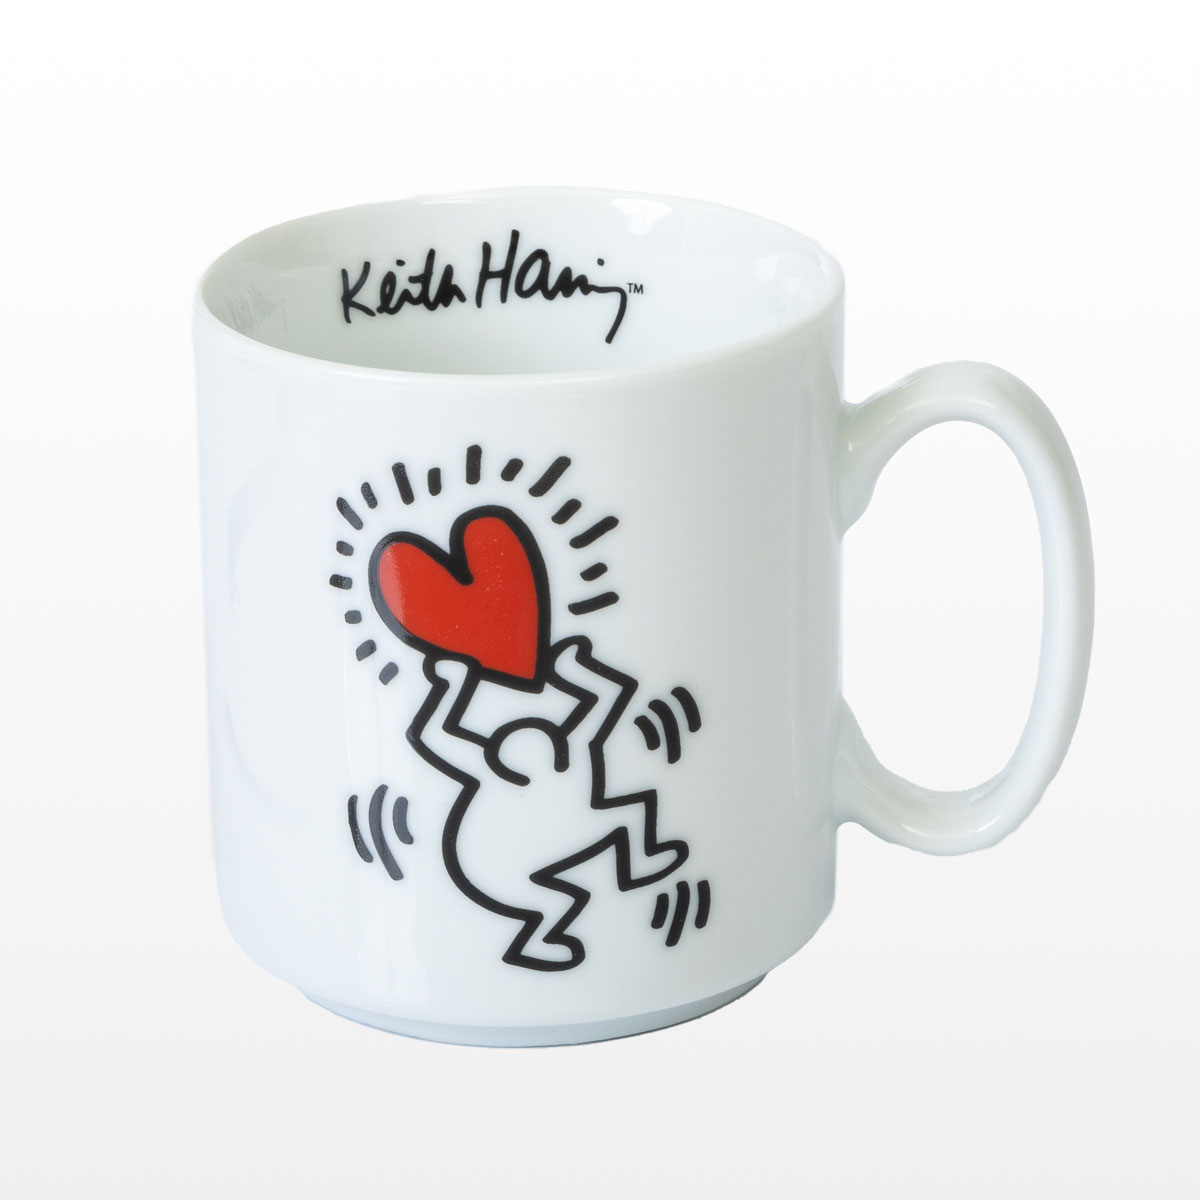 Keith Haring mug : Heart & Dancers - 1 Character